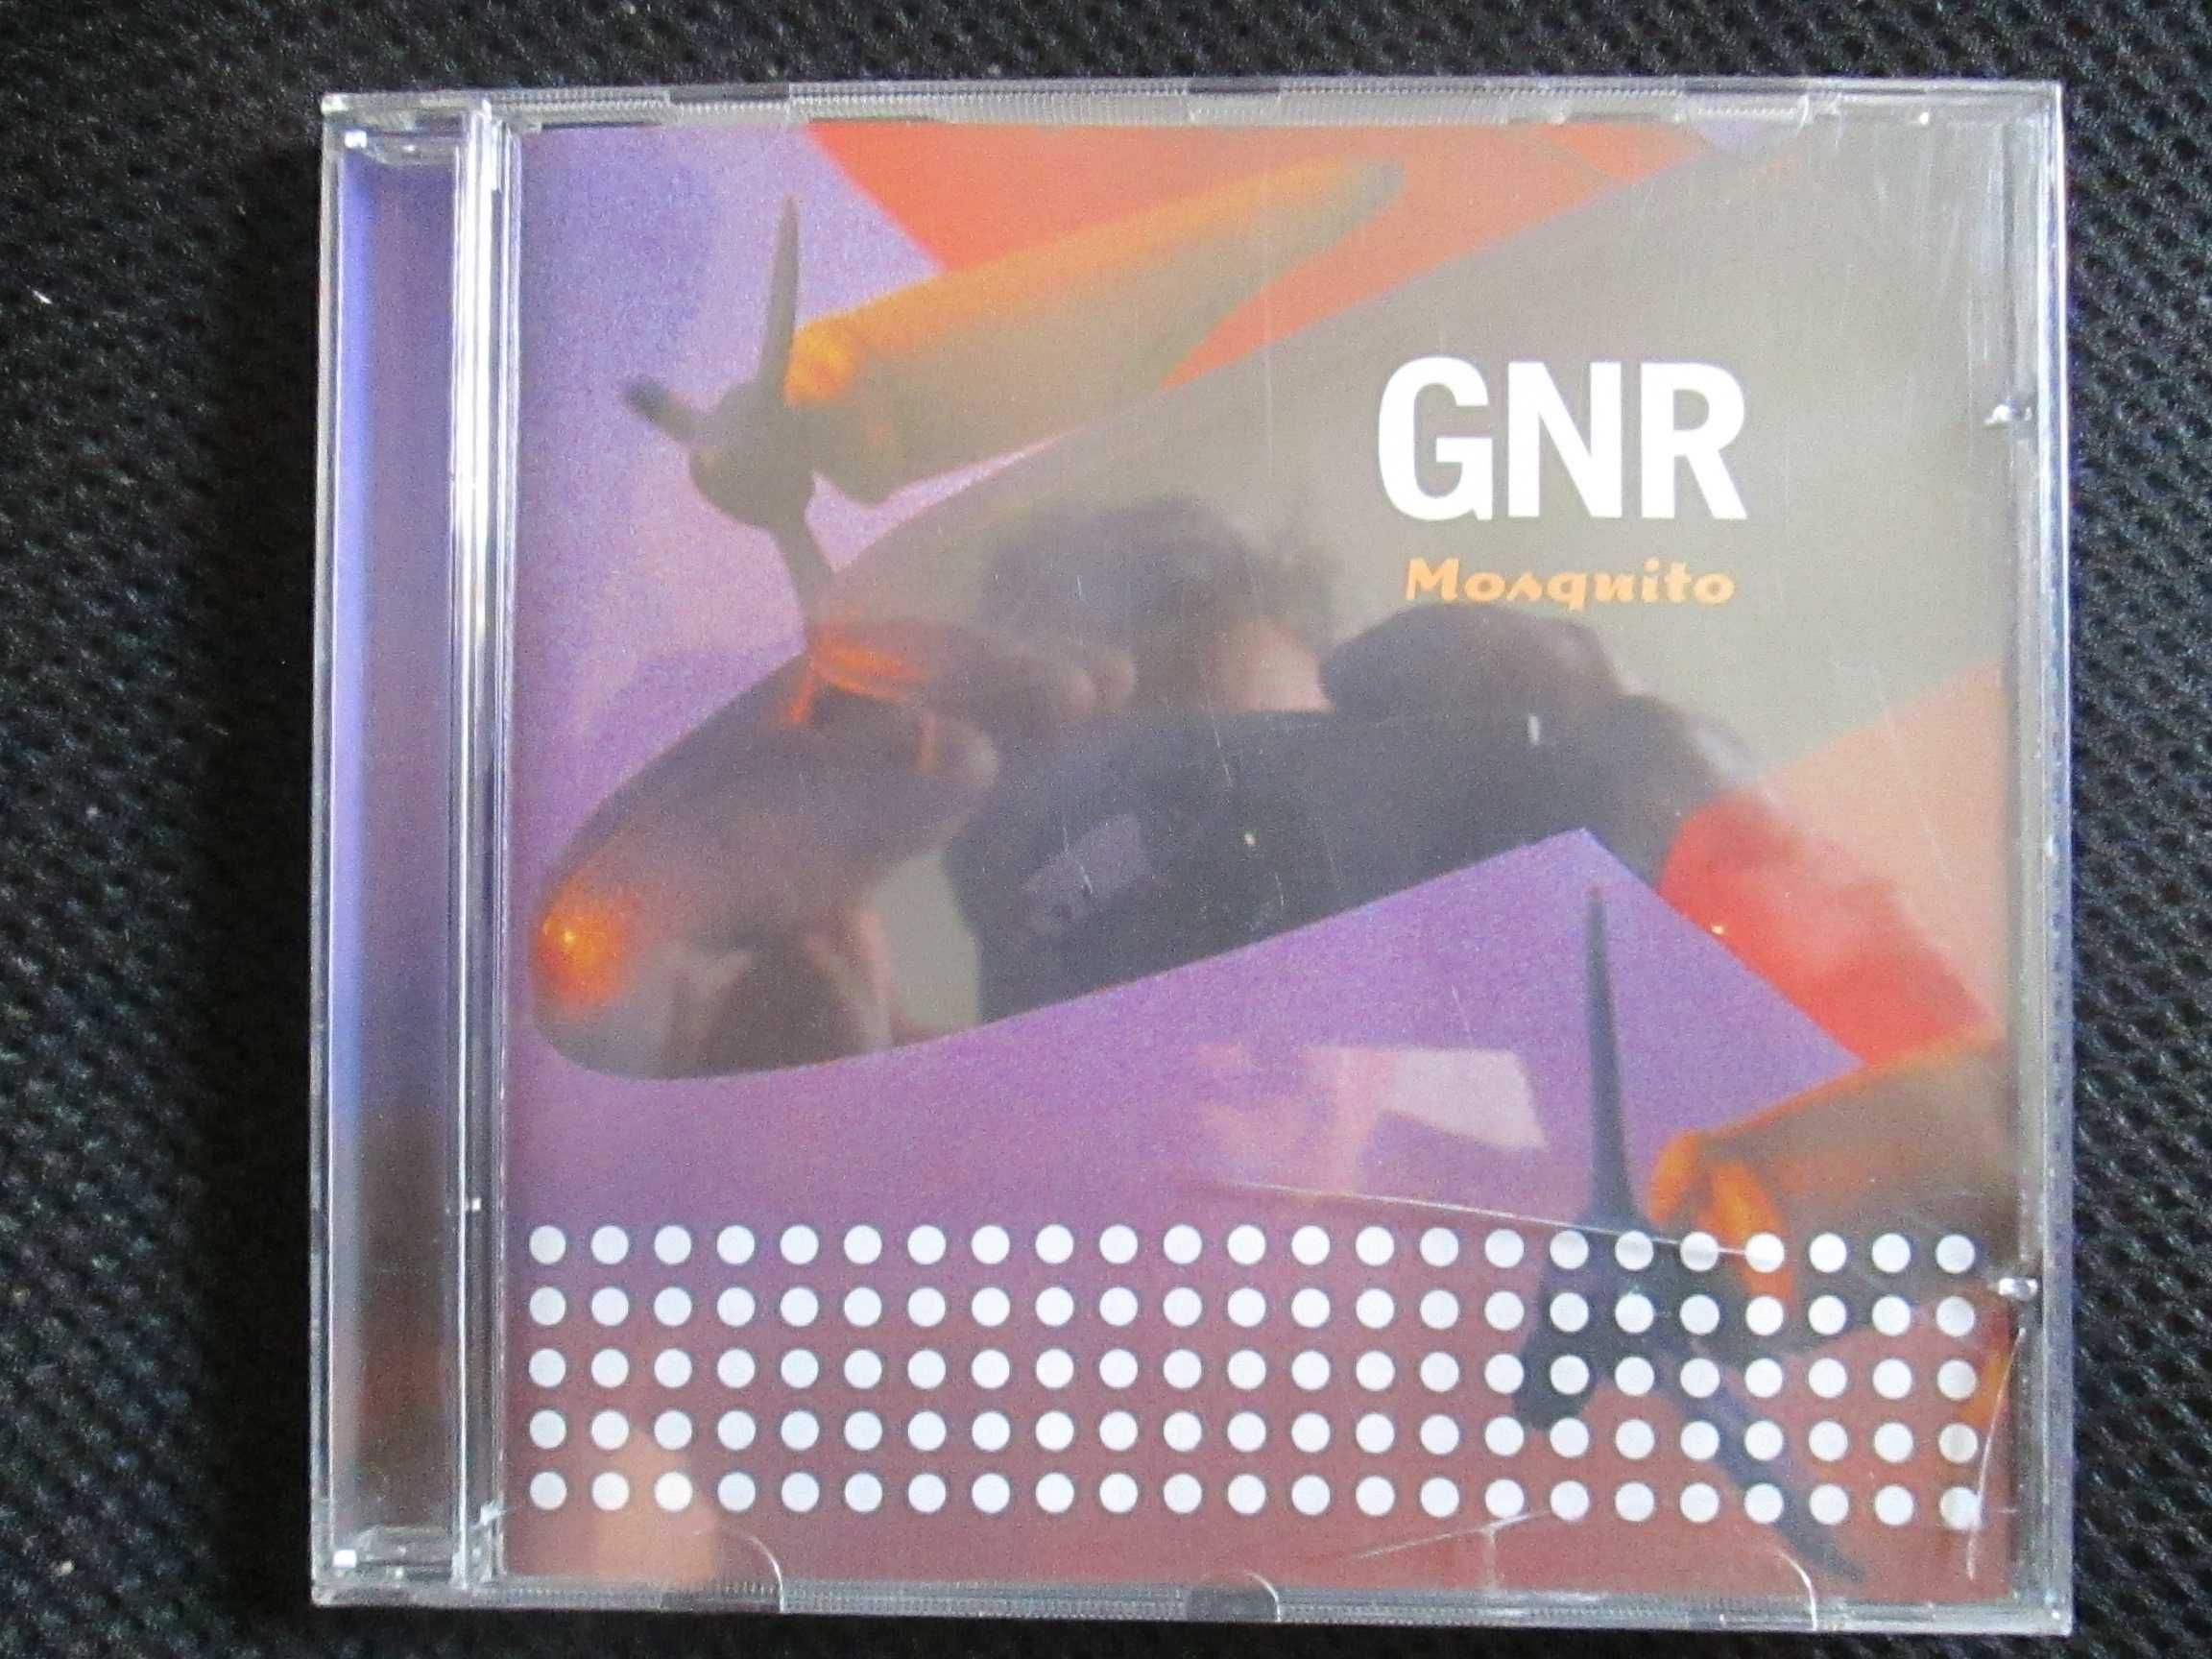 GNR - Mosquito, como novo